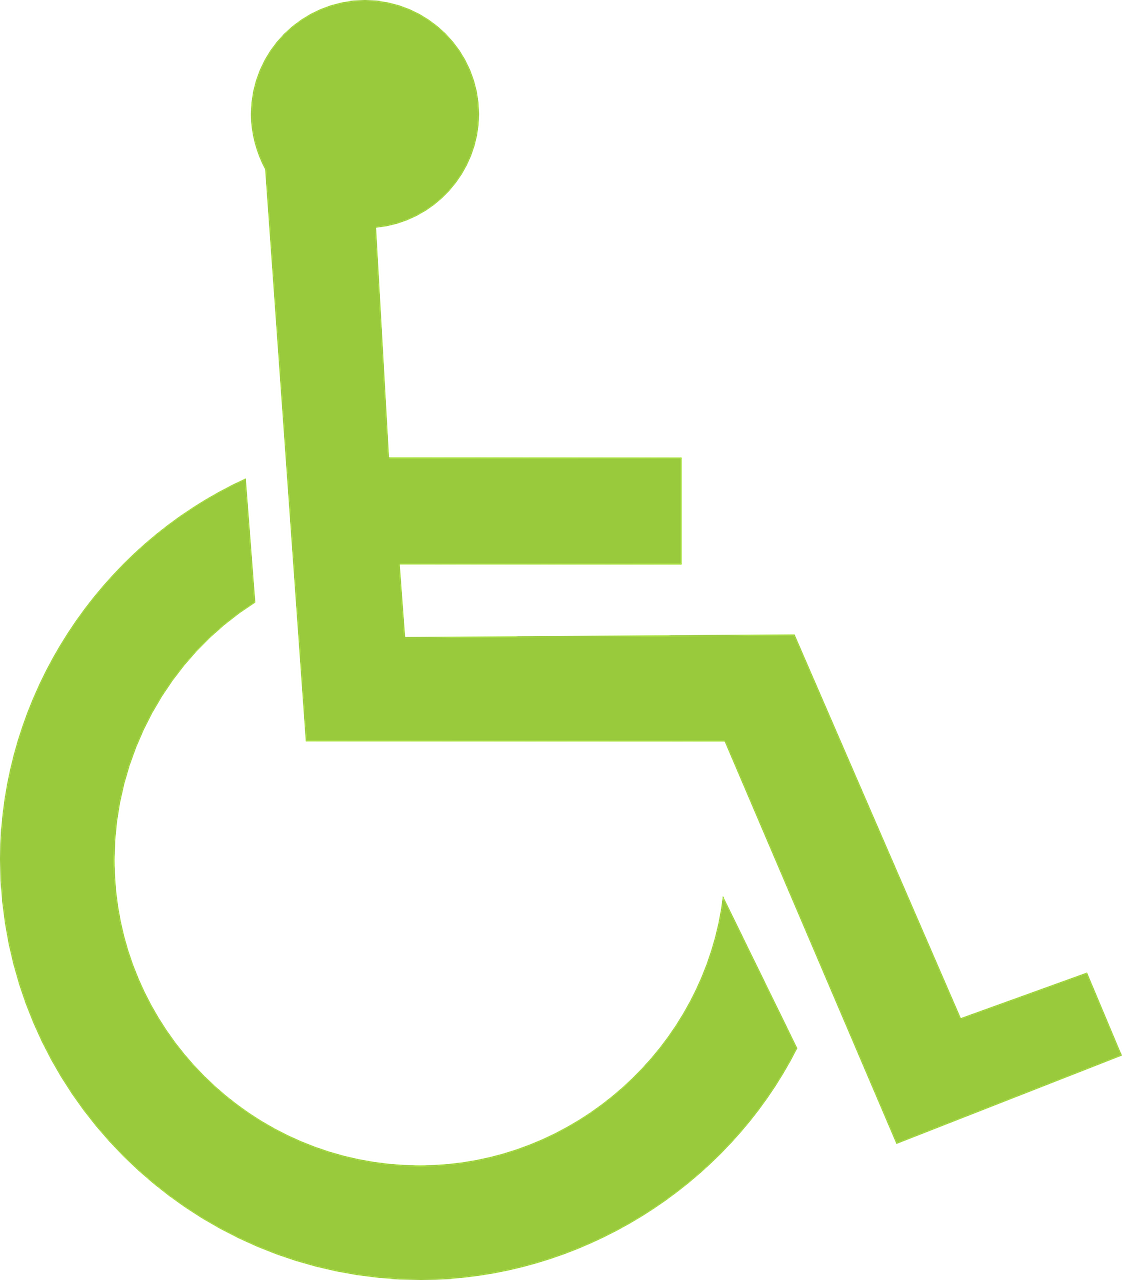 Logeerhuis Alphen Gemiva - SVG Groep ervaringen instelling gehandicaptenzorg verstandelijk gehandicapten